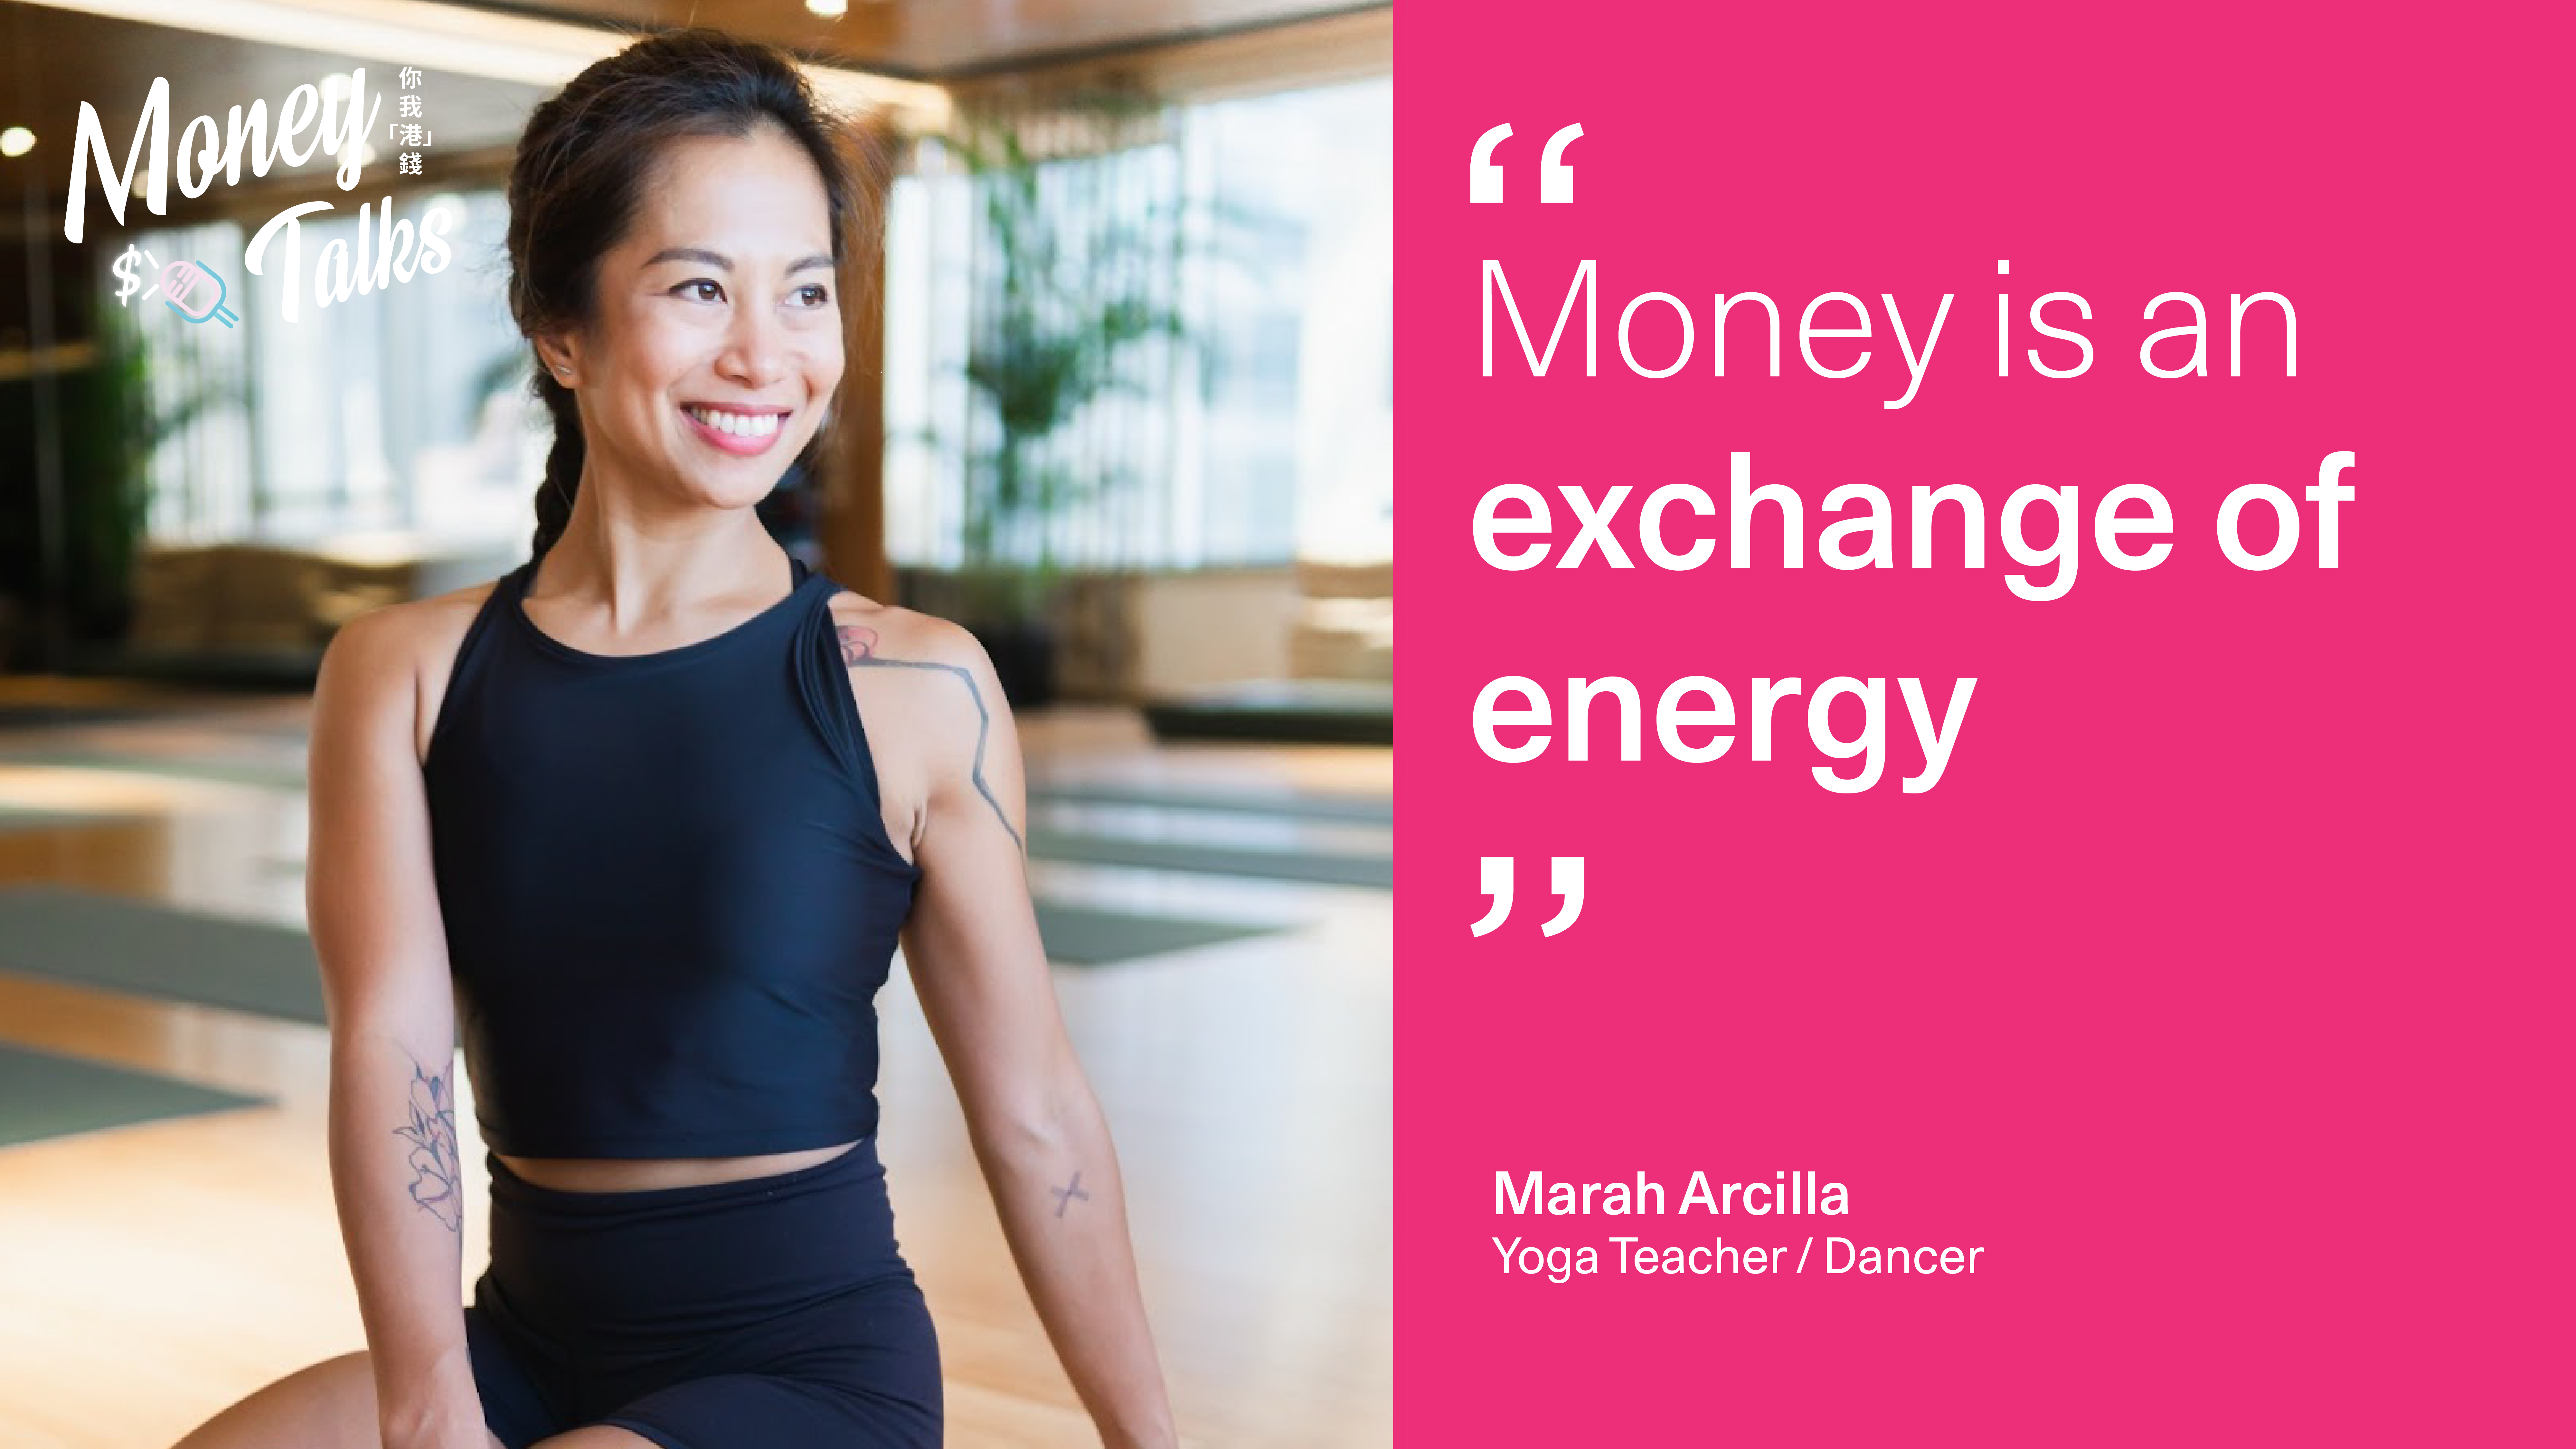 瑜伽导师、舞者、啤酒厂创办人—— Marah 的金钱观